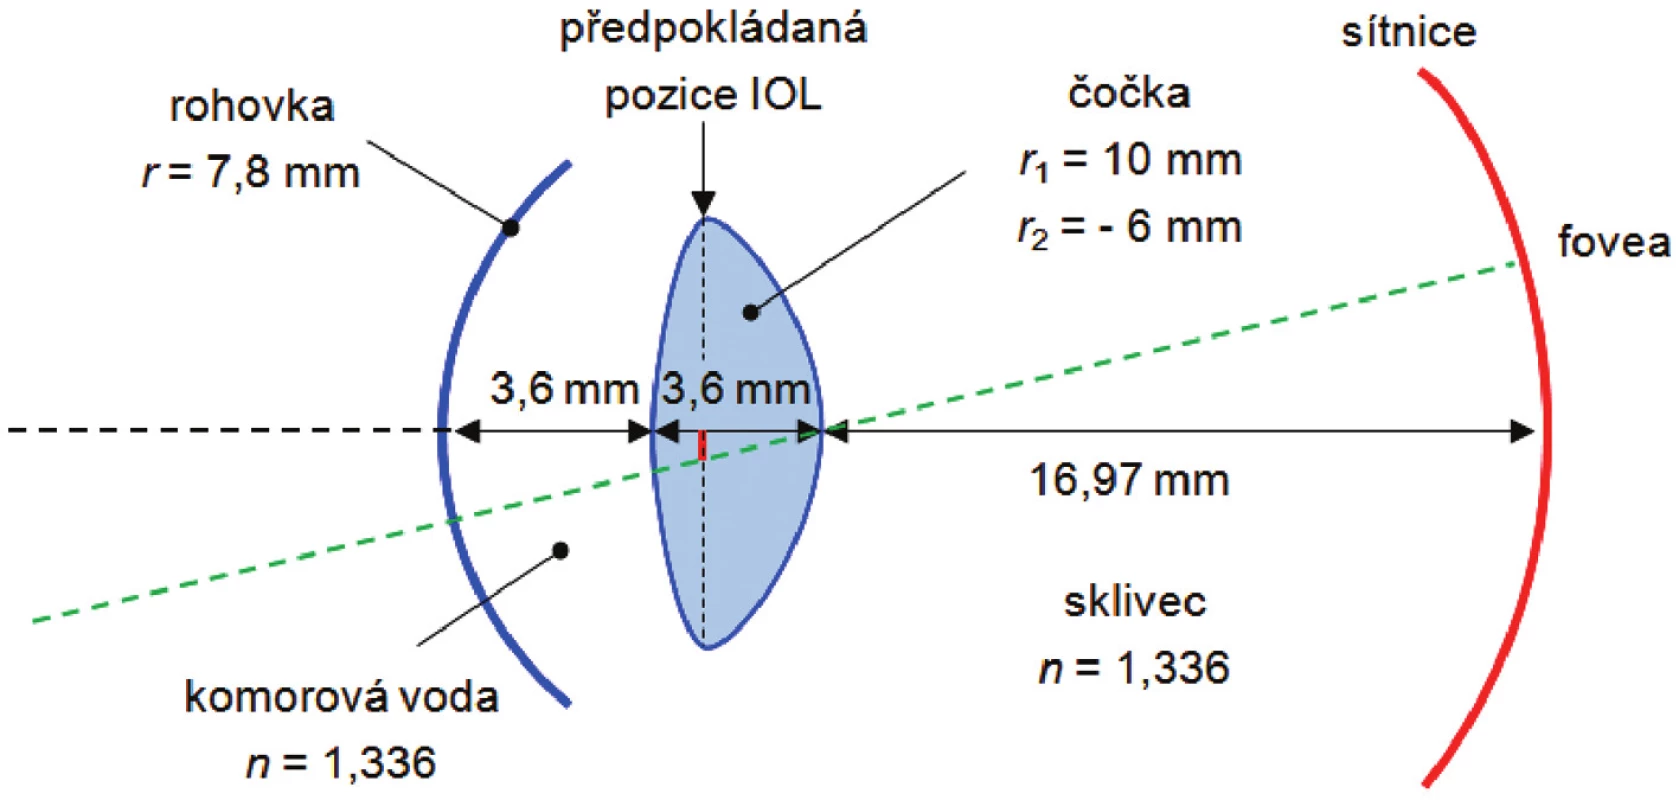 Gullstrandův zjednodušený schematický model oka